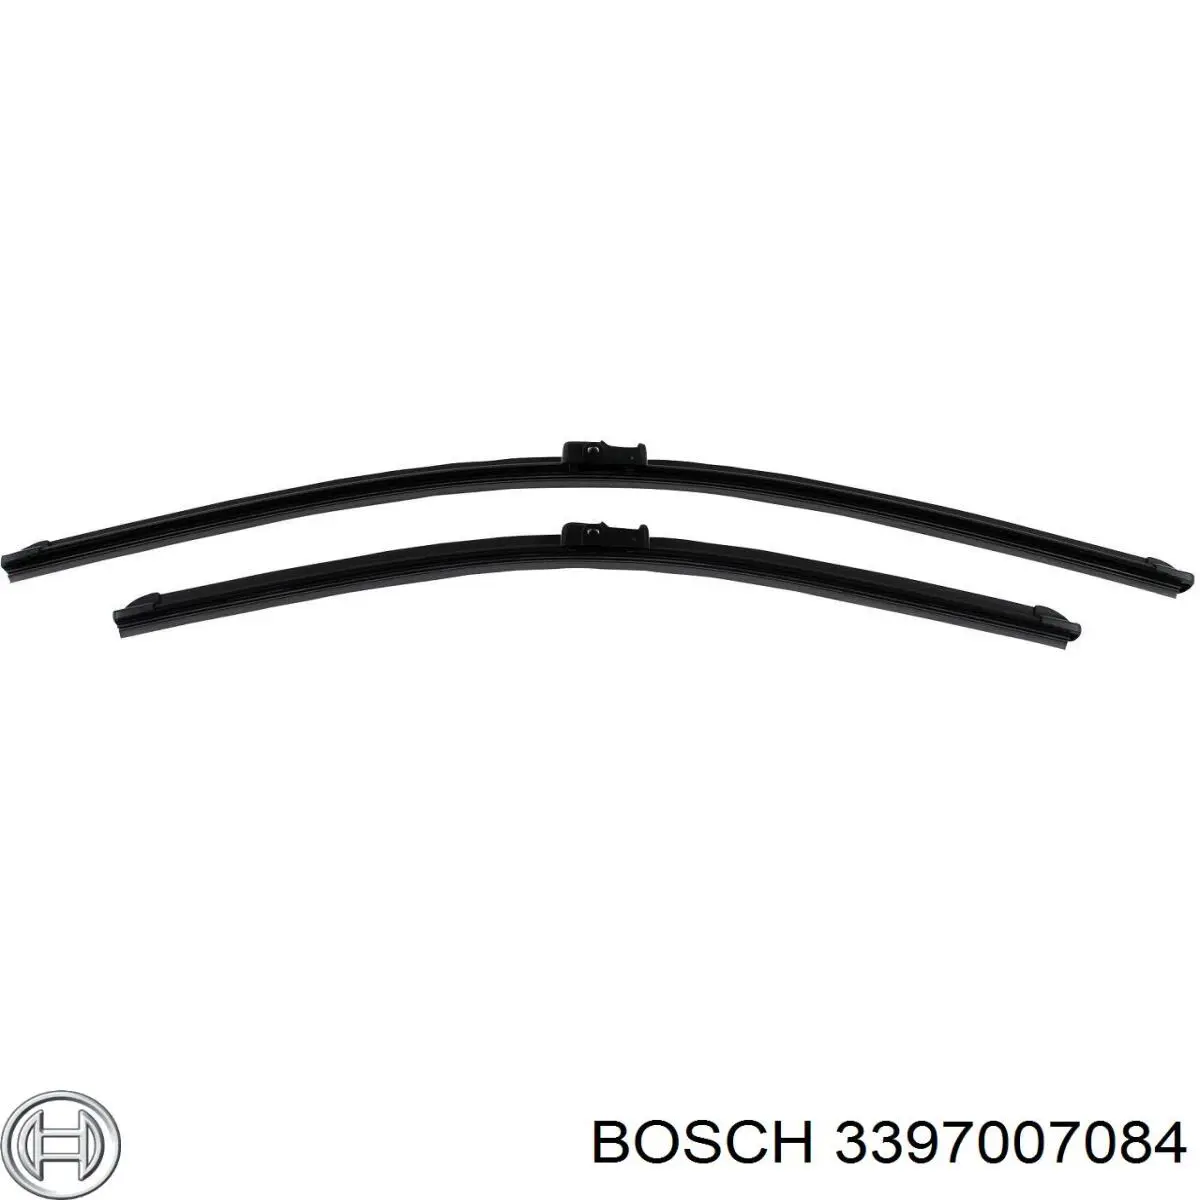 3397007084 Bosch щетка-дворник лобового стекла, комплект из 2 шт.